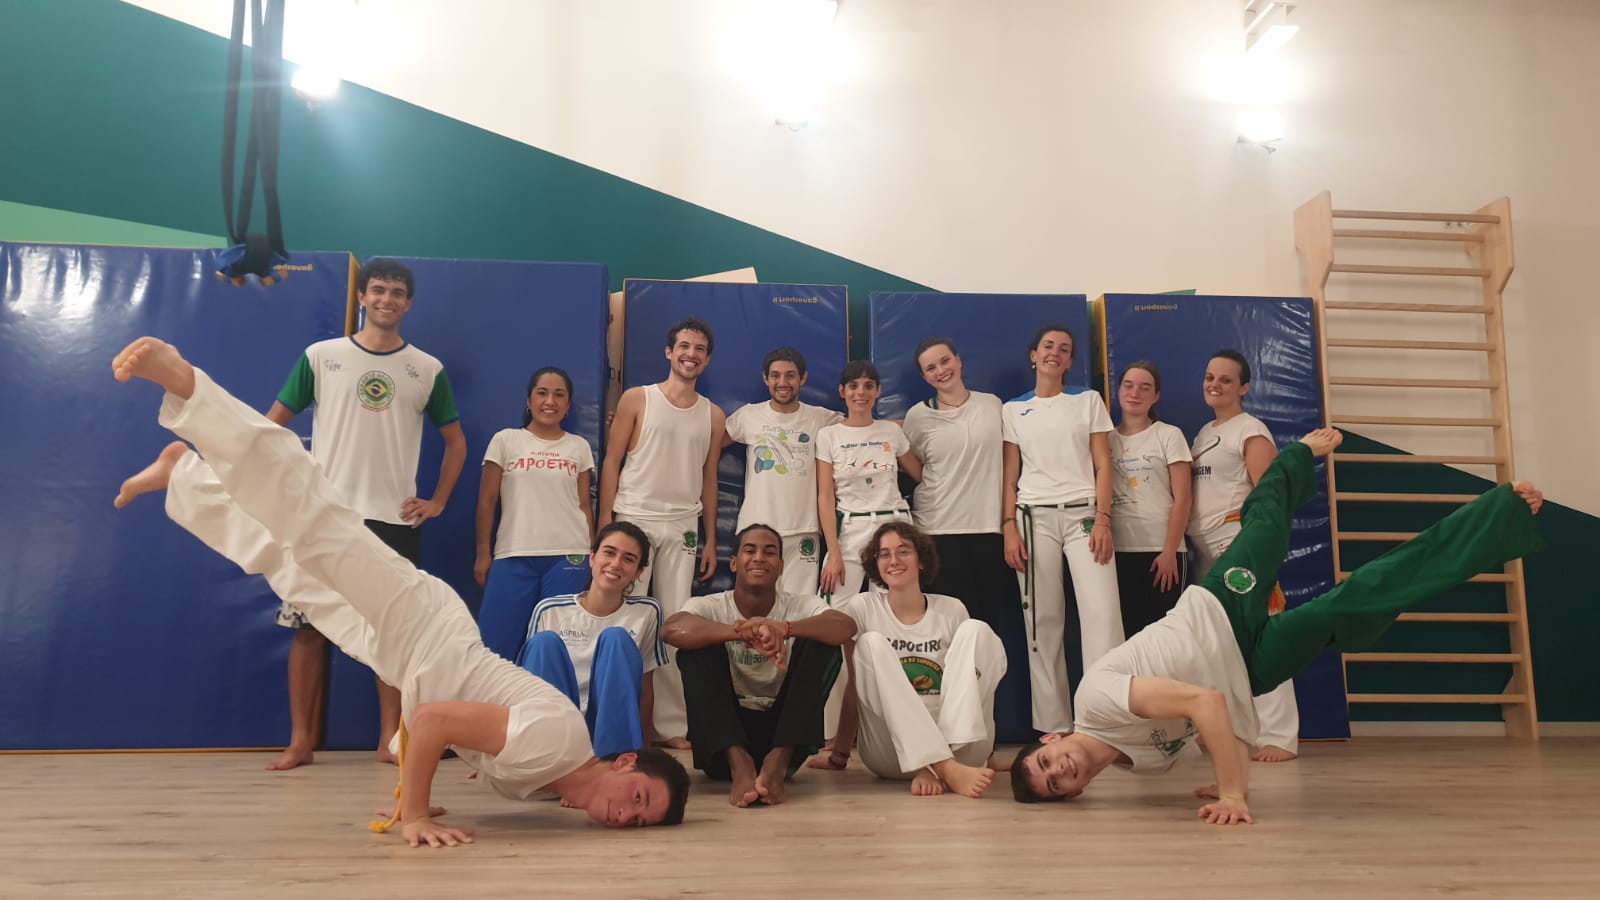 gruppo capoeira milano